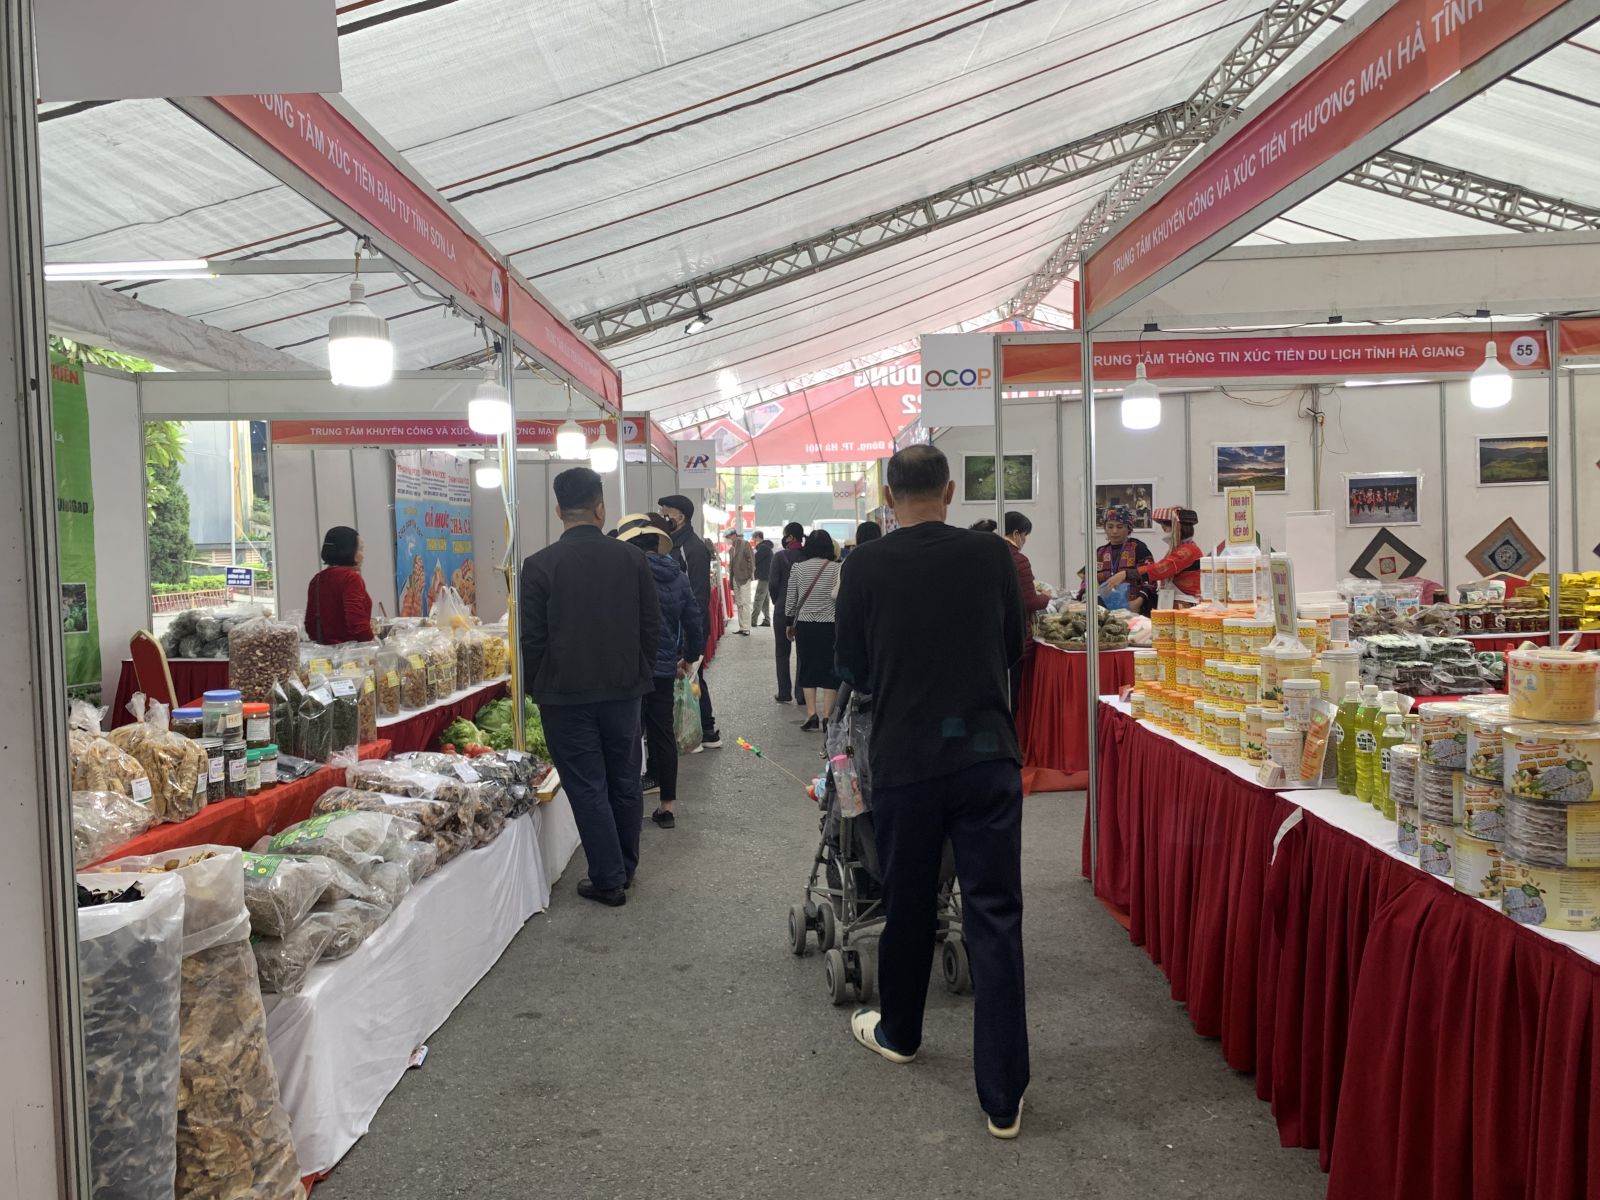 Hội chợ hàng tiêu dùng Hà Nội năm 2022 diễn ra từ ngày 22-25/12/2022 tại Trung tâm Thương mại Mê Linh Plaza Hà Đông với quy mô 120 gian hàng của các doanh nghiệp Hà Nội và gần 30 tỉnh, thành phố trong cả nước.